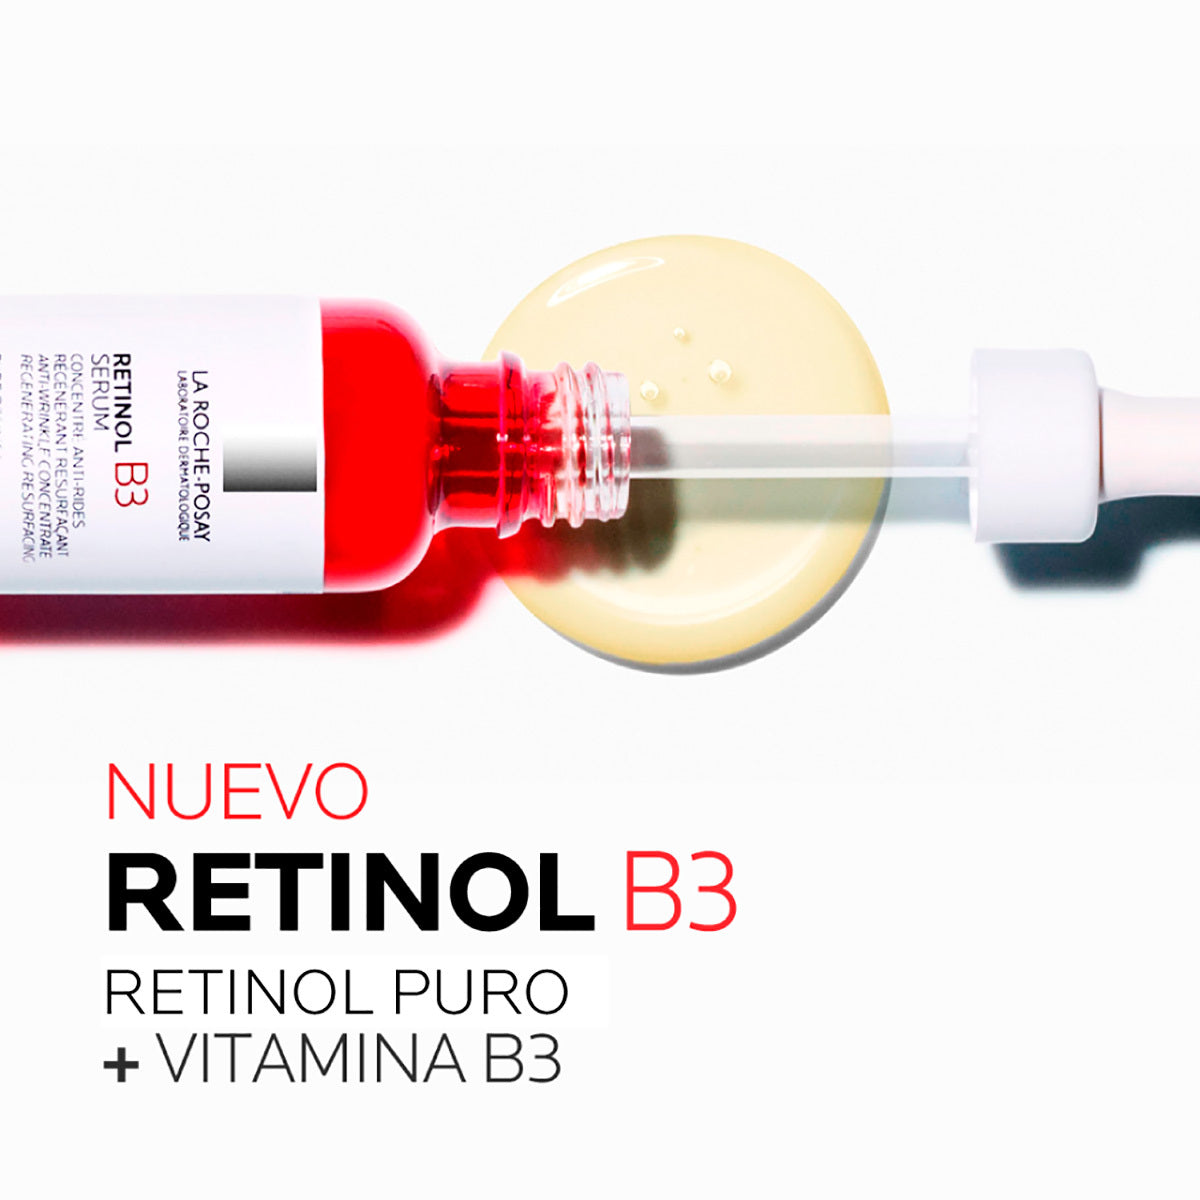 Sérum Retinol B3 concentrado antiarrugas, reparador y regenerador incluso para pieles sensibles La Roche-Posay